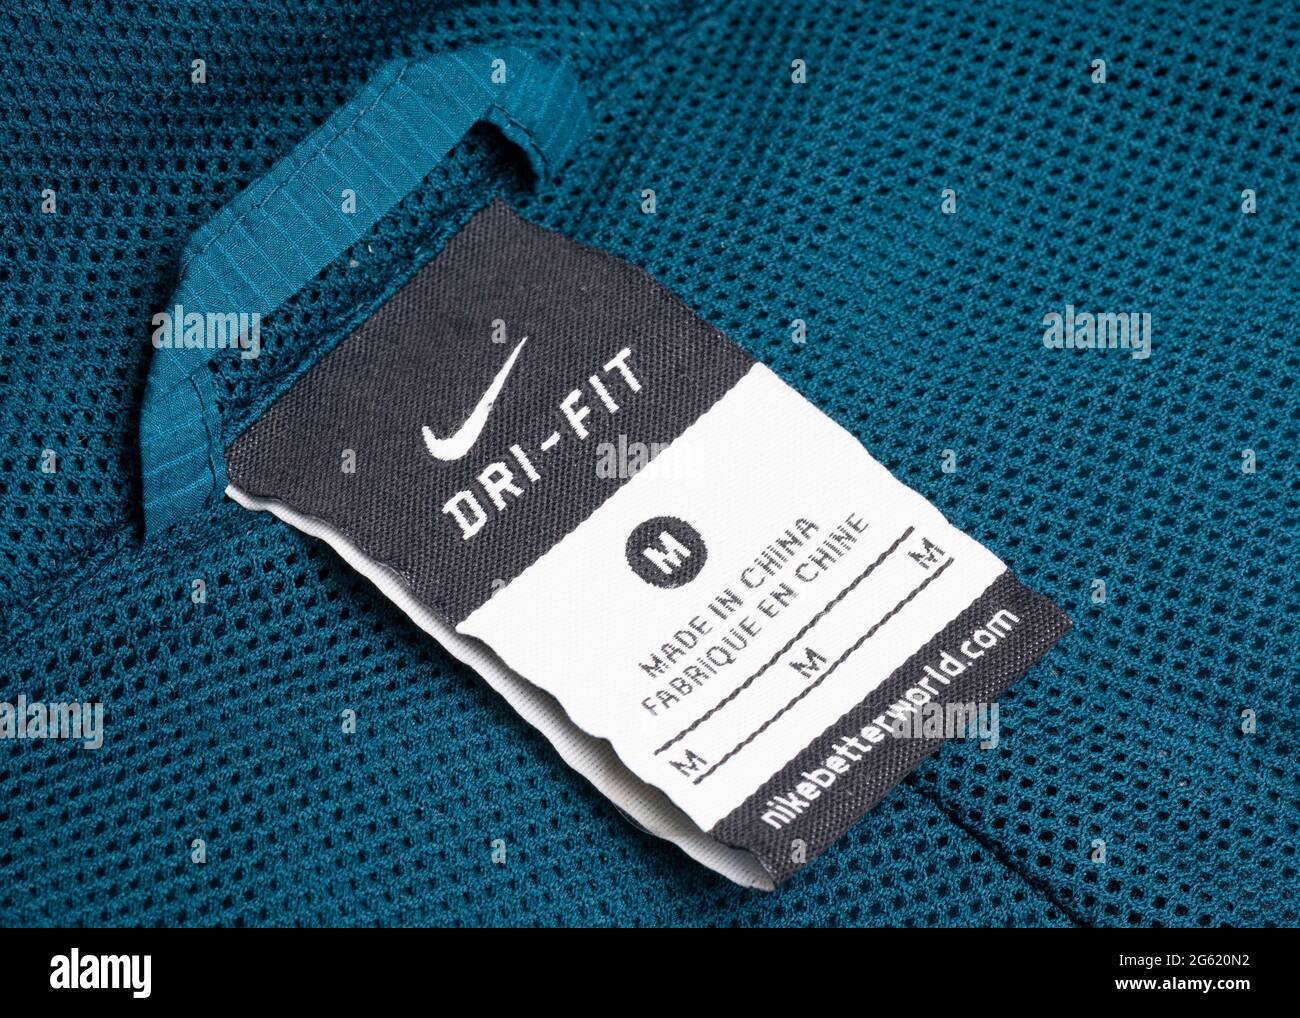 Etichetta Made in China sugli indumenti sportivi Nike Dry Fit Foto stock -  Alamy